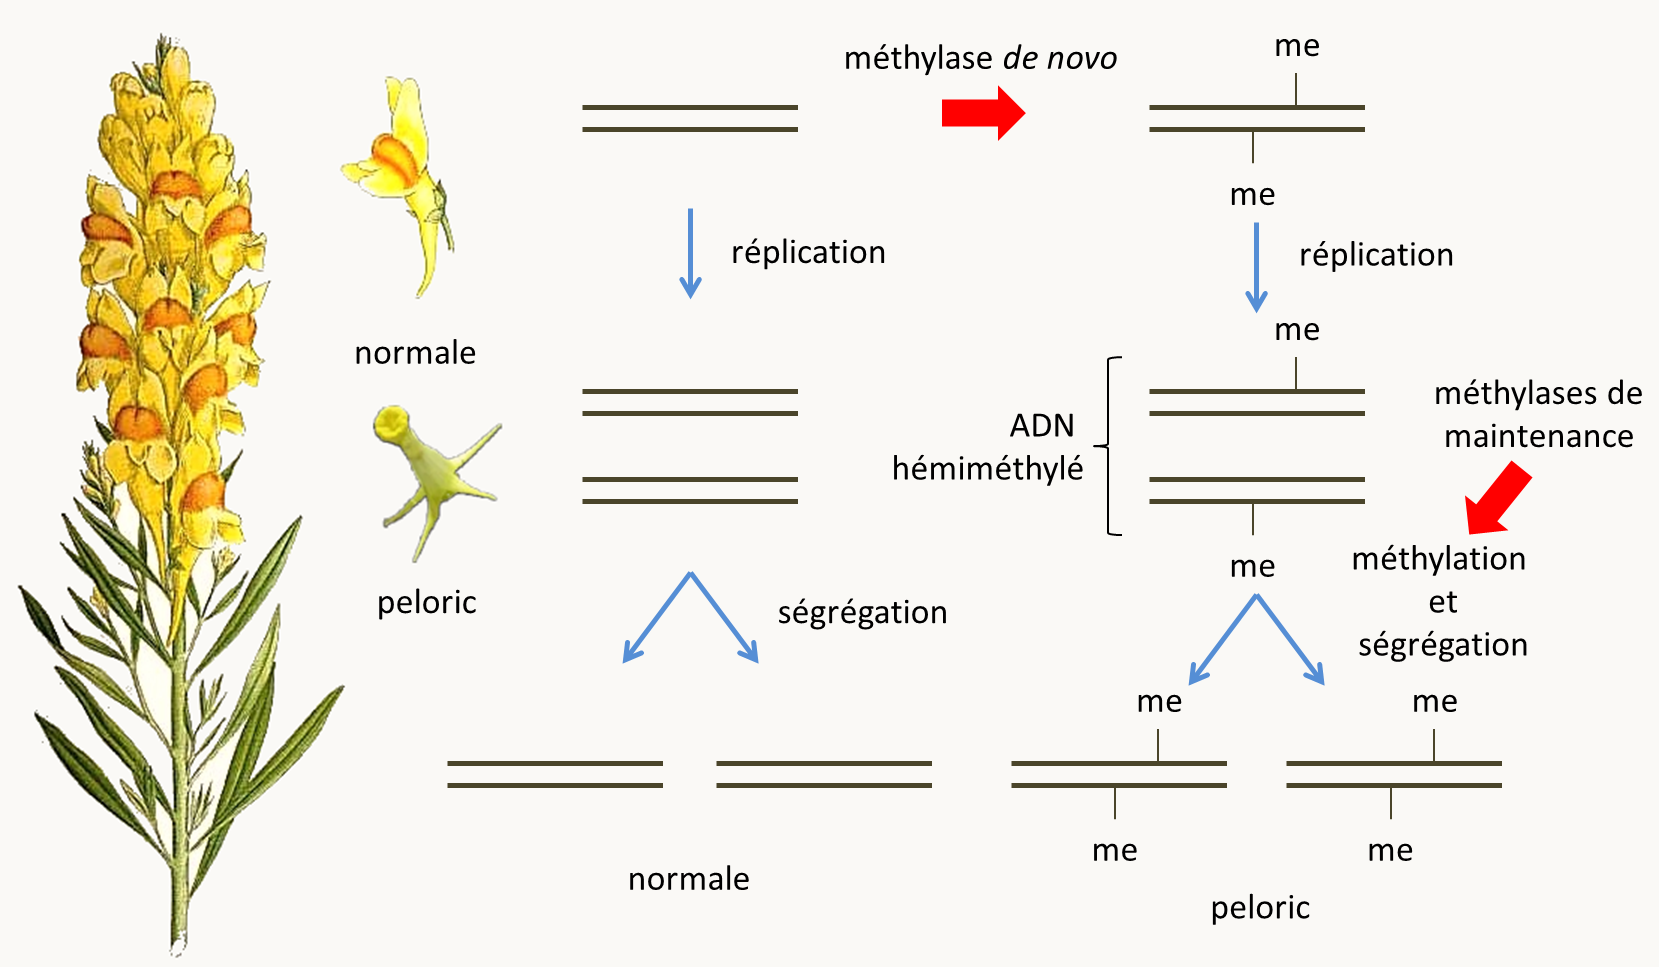 à gauche Linaria vulgaris et ses deux formes de fleurs: "normale" et "peloric". A droite les mécanismes d'acquisition et de maintien de l'état de méthylation au cours de la réplication de l'ADN via l'action respectivement d'une méthylase de novo qui méthyle l'ADN non méthylé et de méthylases de maintenance dont l'activité consiste à terminer la méthylation d'ADN hémiméthylé.